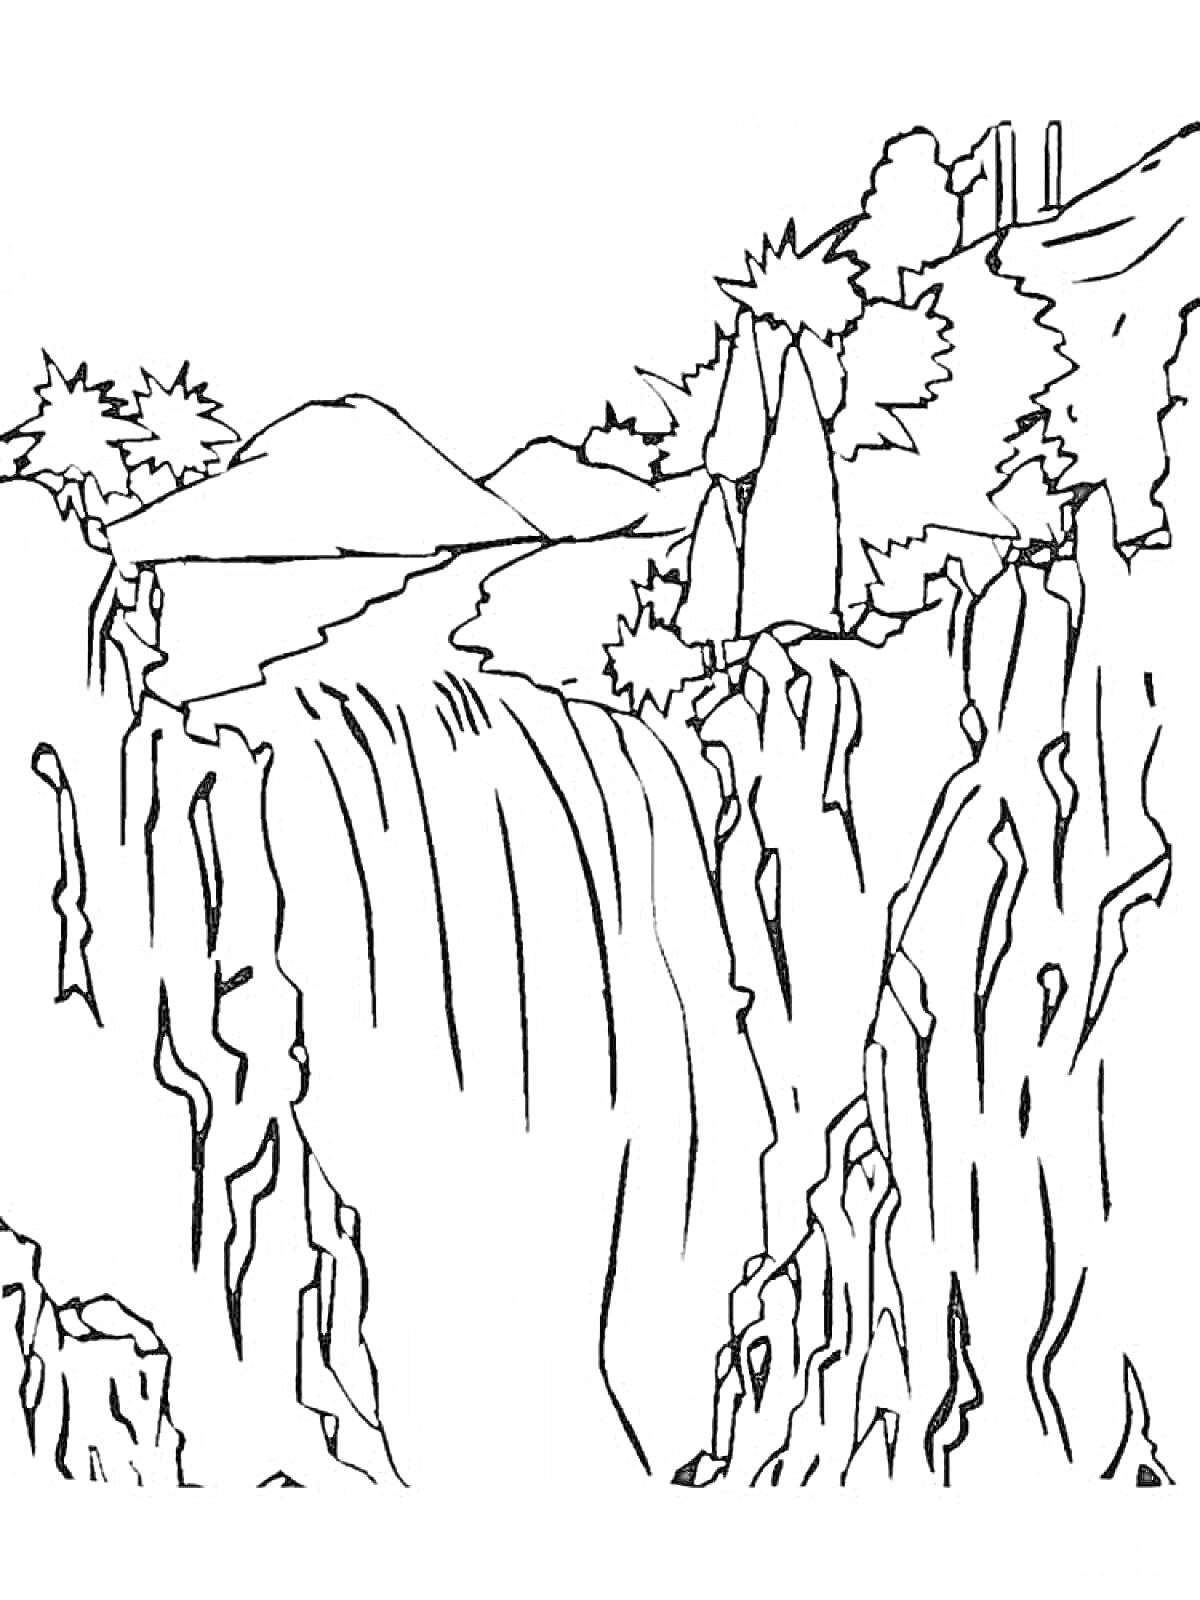 Раскраска Водопад с деревьями и кустарниками на возвышенности